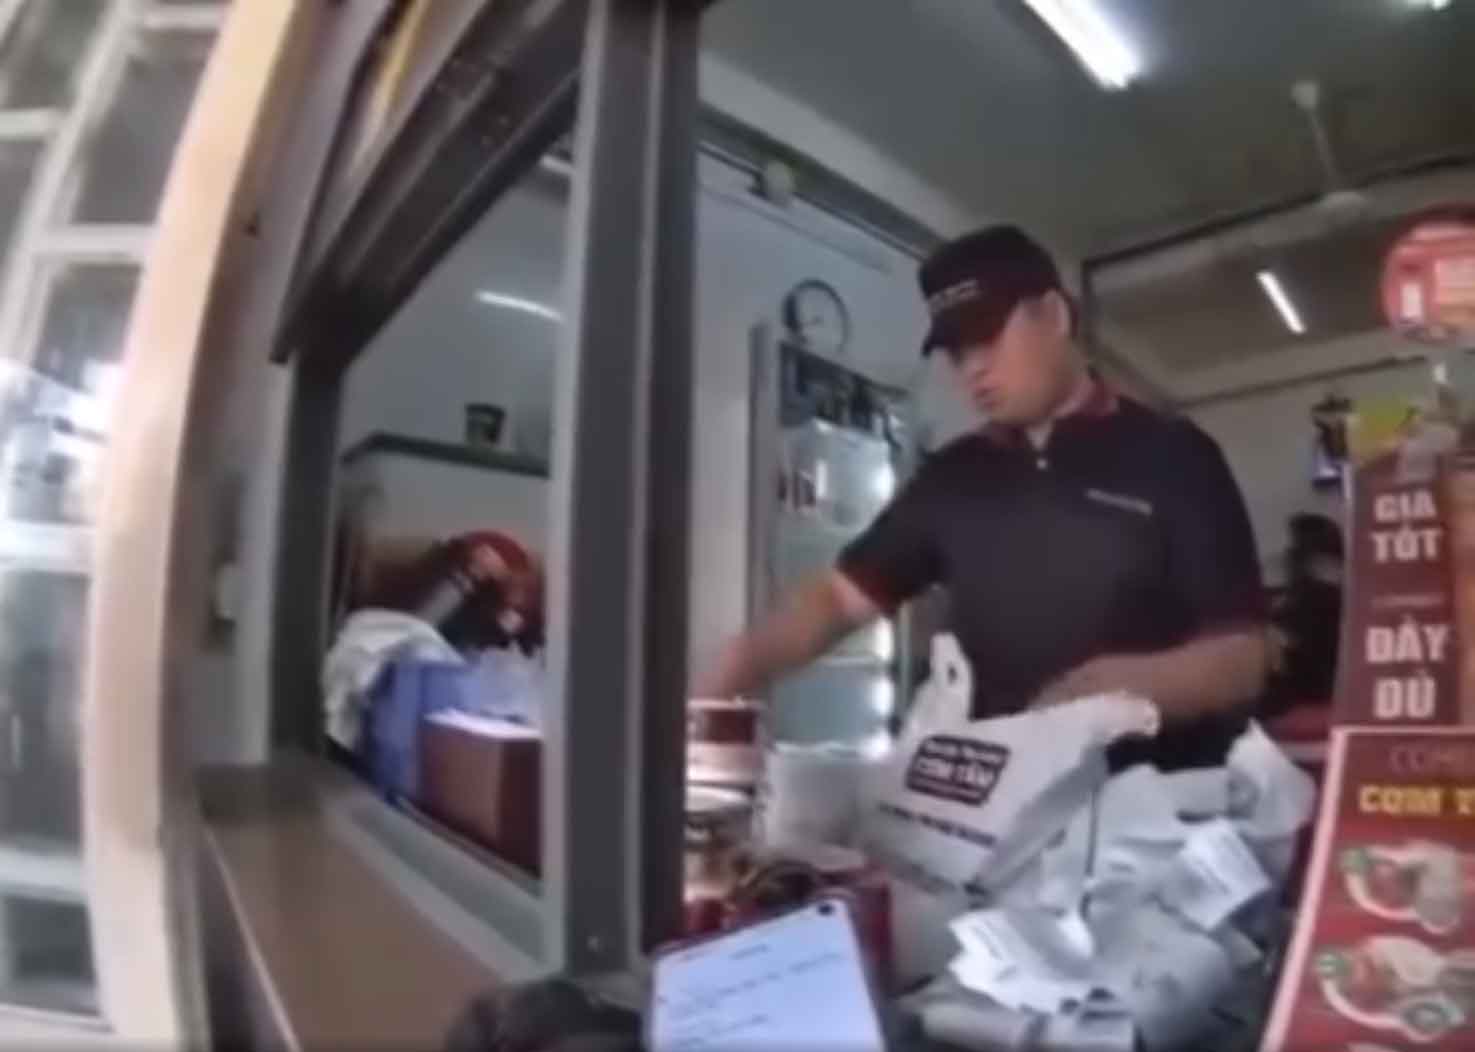 Nóng: Nhân viên Shipper bị nhân viên bán đồ ăn khinh thường trước sự chứng kiến của nhiều người